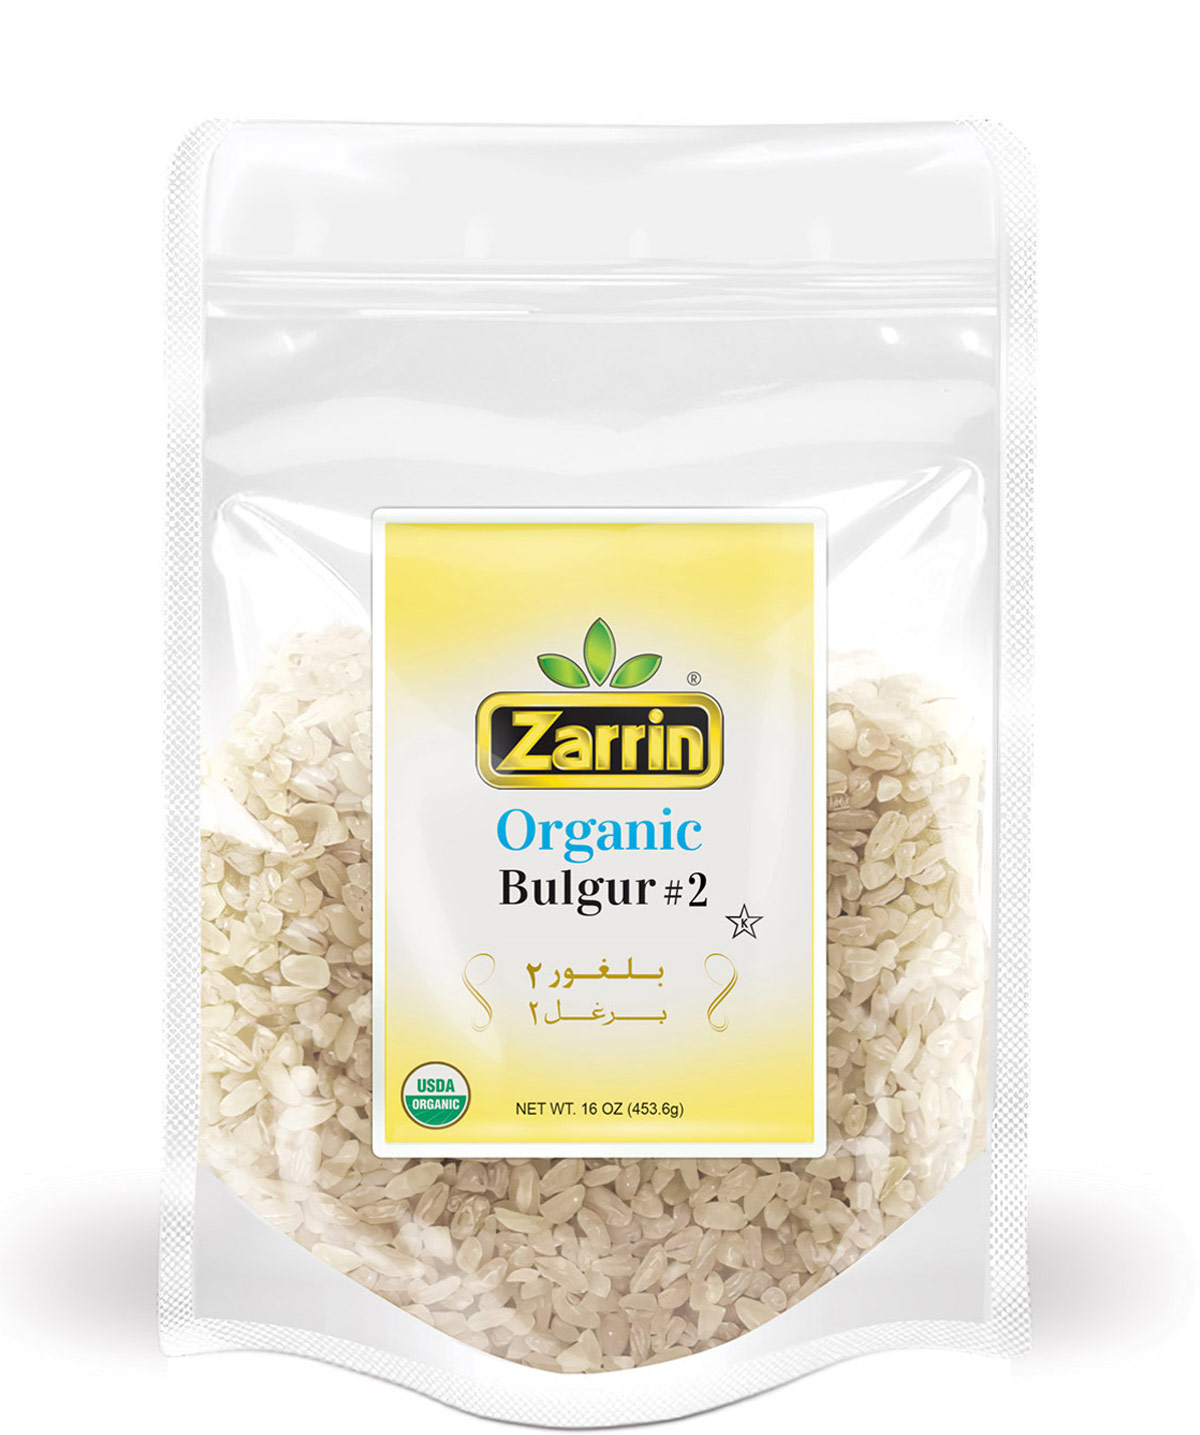 Zarrin Organic Bulgur #2